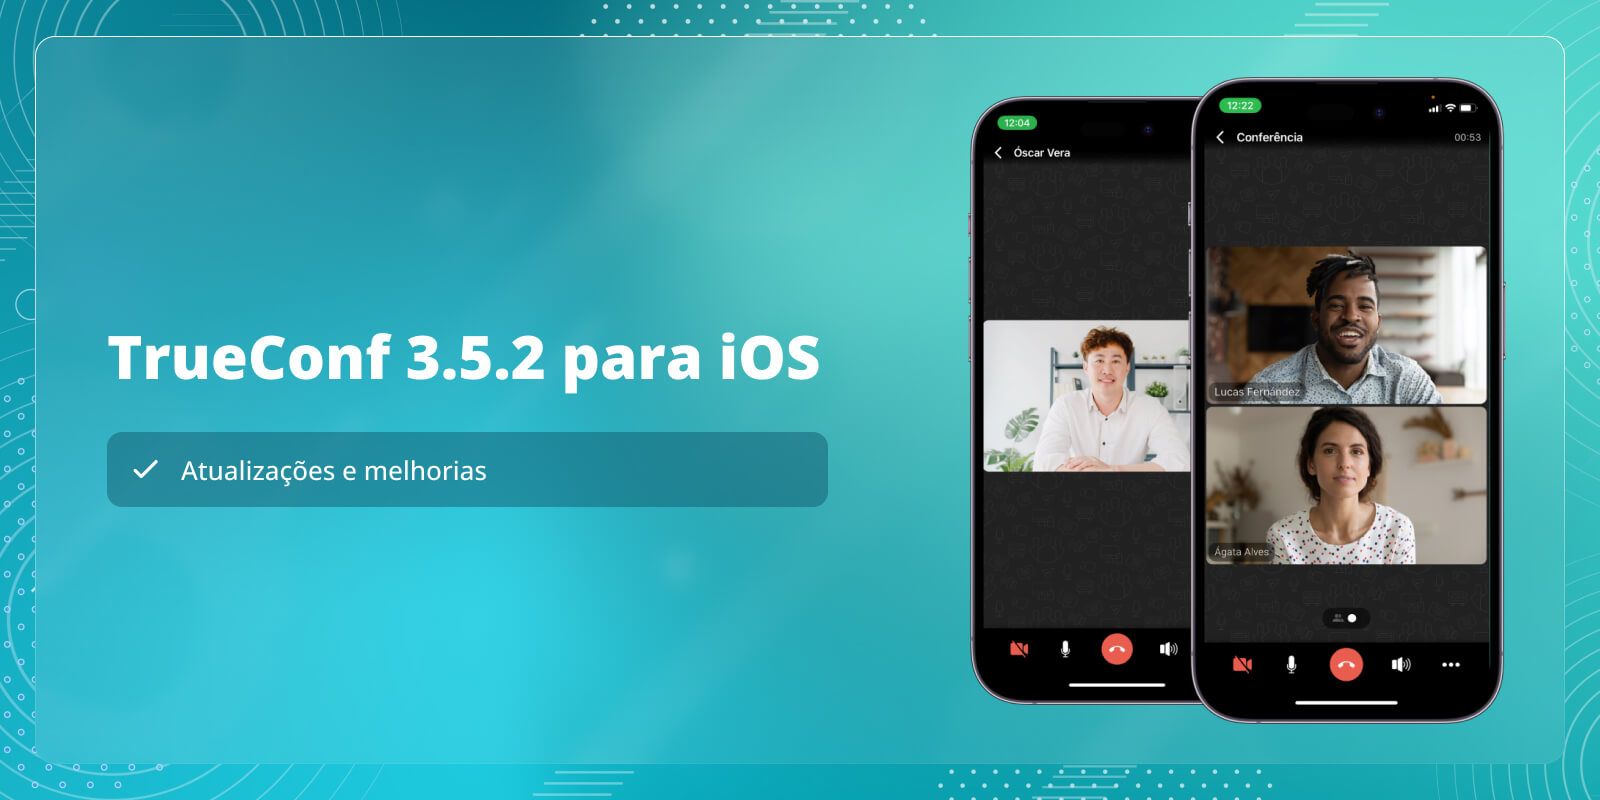 TrueConf 3.5.2 para iOS: atualizações e melhorias 1